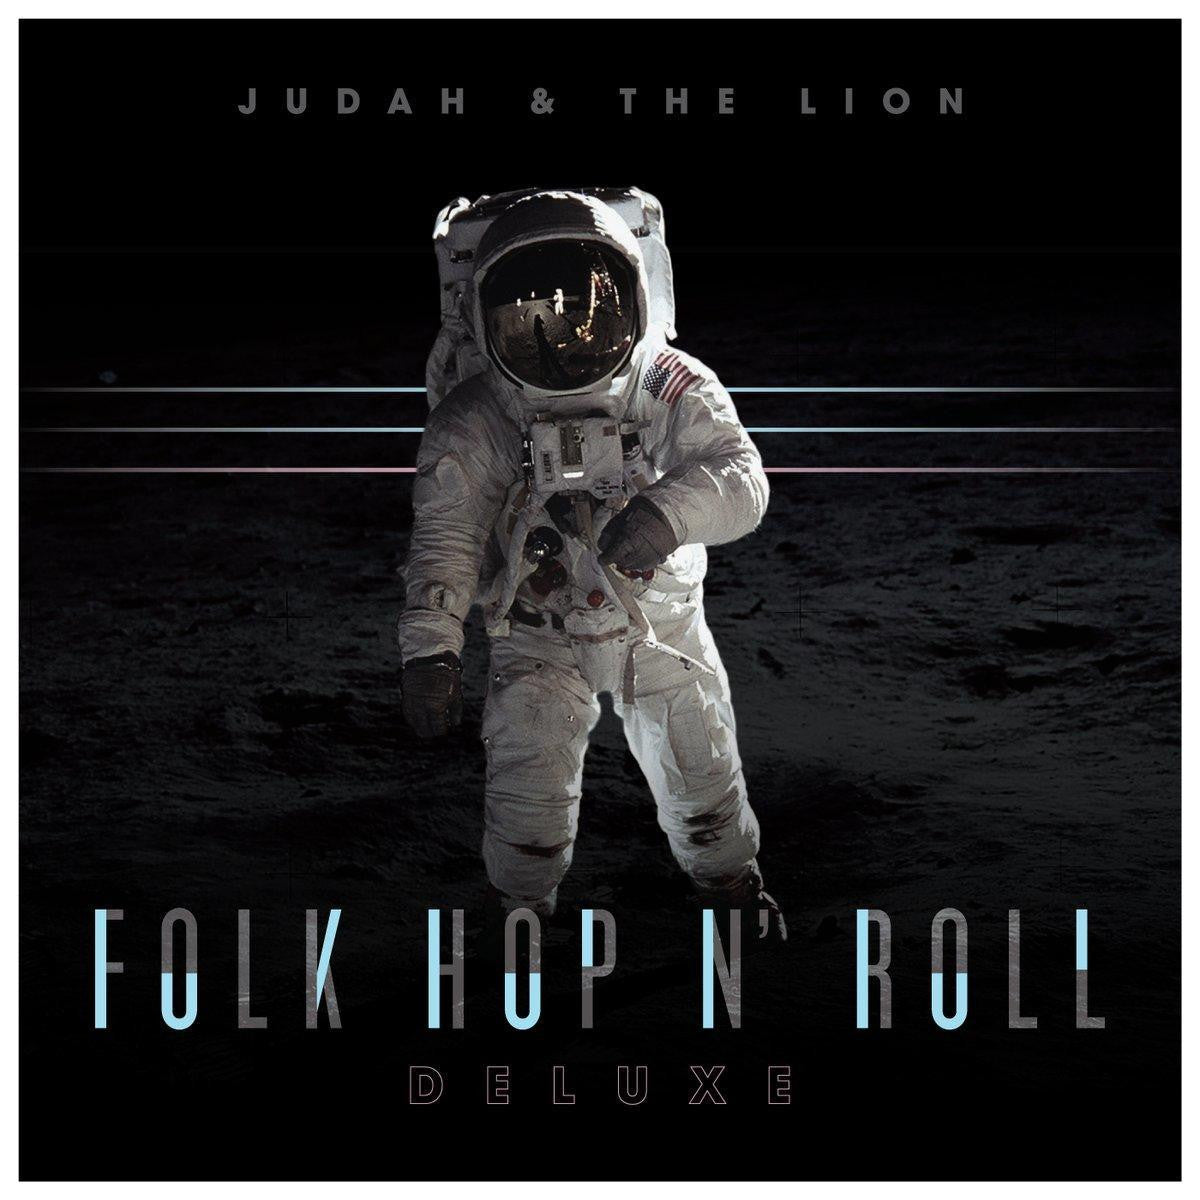 Judah & The Lion: Folk Hop N' Roll Deluxe CD